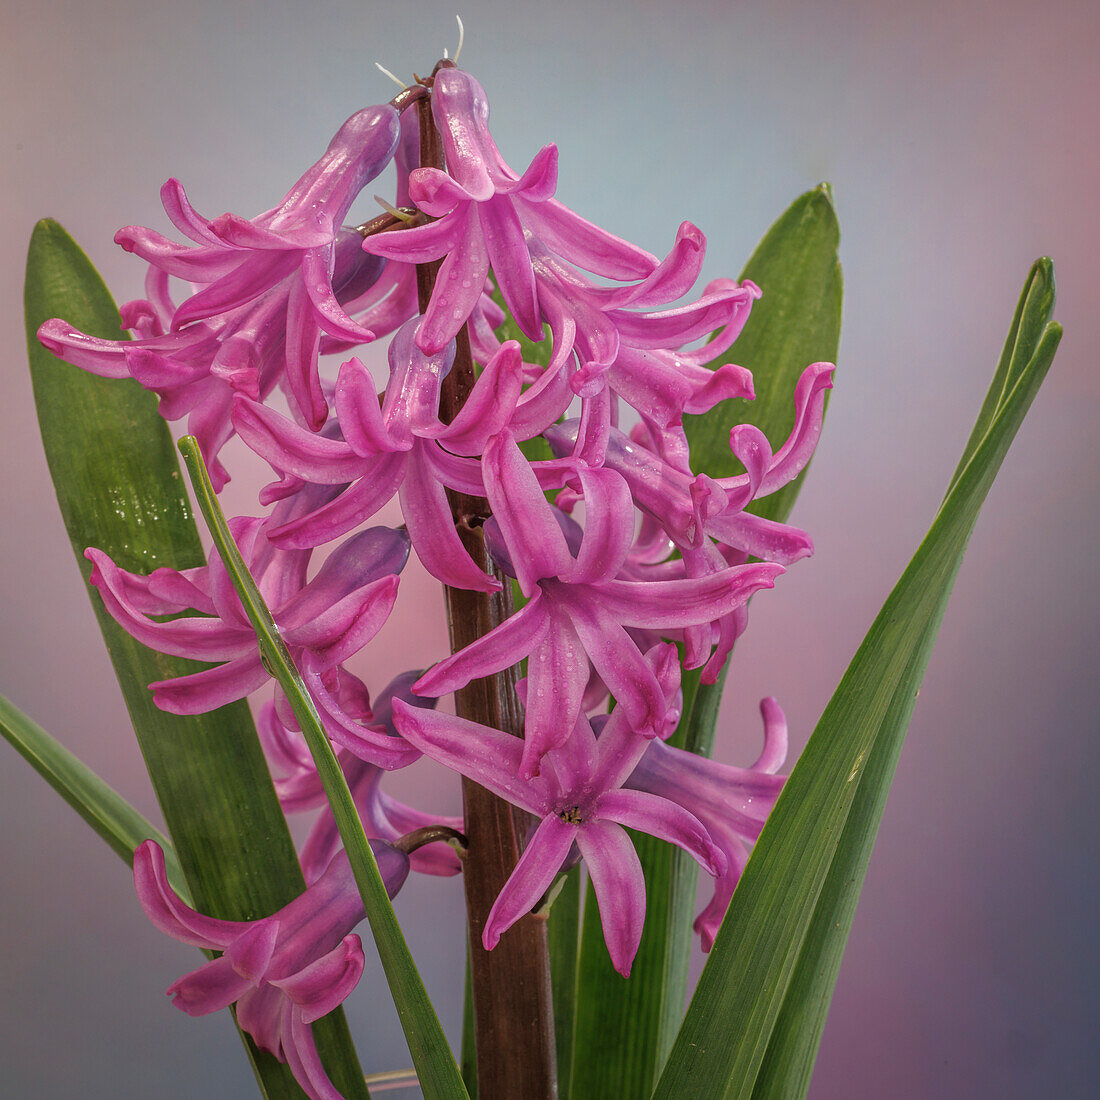 USA, Washington State, Seabeck. Pink hyacinth flowers.